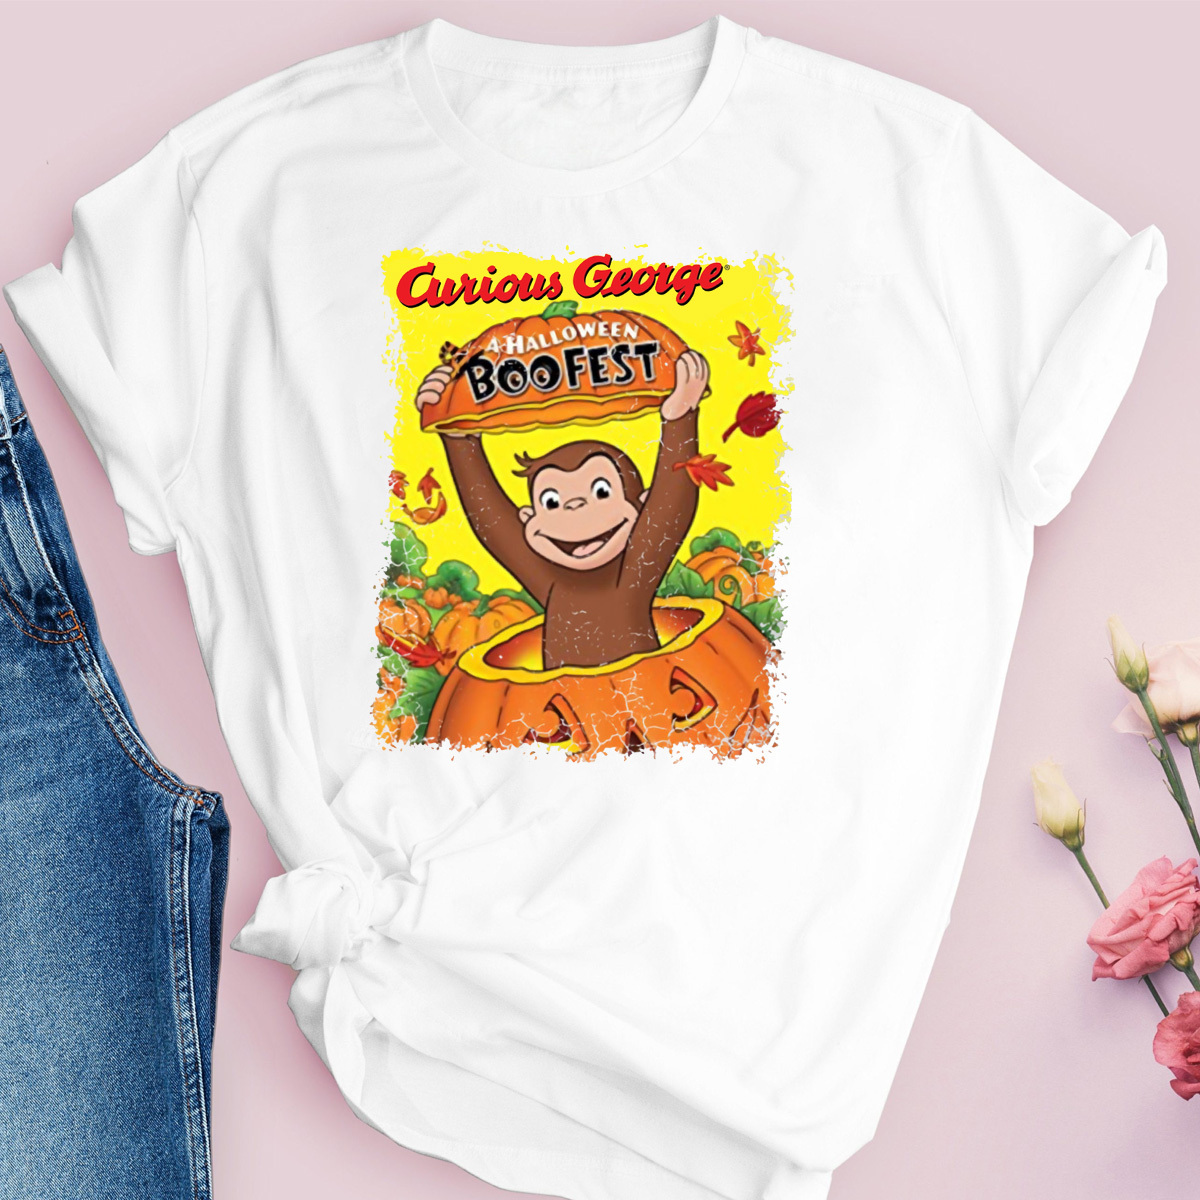 Curious George halloween Unisex Shirt, Curious George kids gift shirt, Curious George A halloween Boofest shirt, Monkey lover shirt